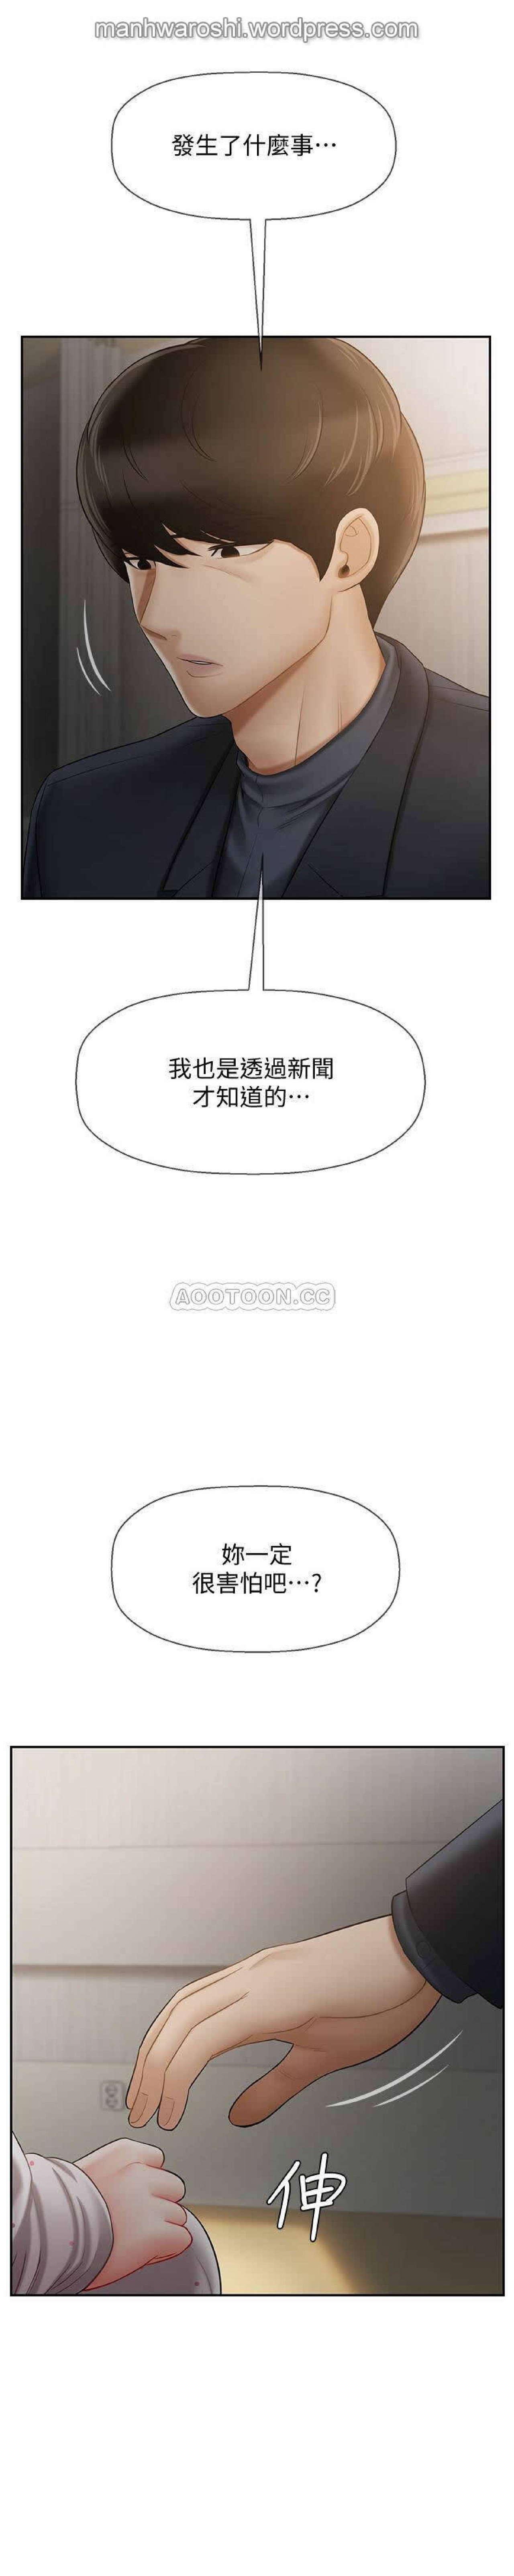 坏老师 | PHYSICAL CLASSROOM 12 [Chinese] Manhwa 31